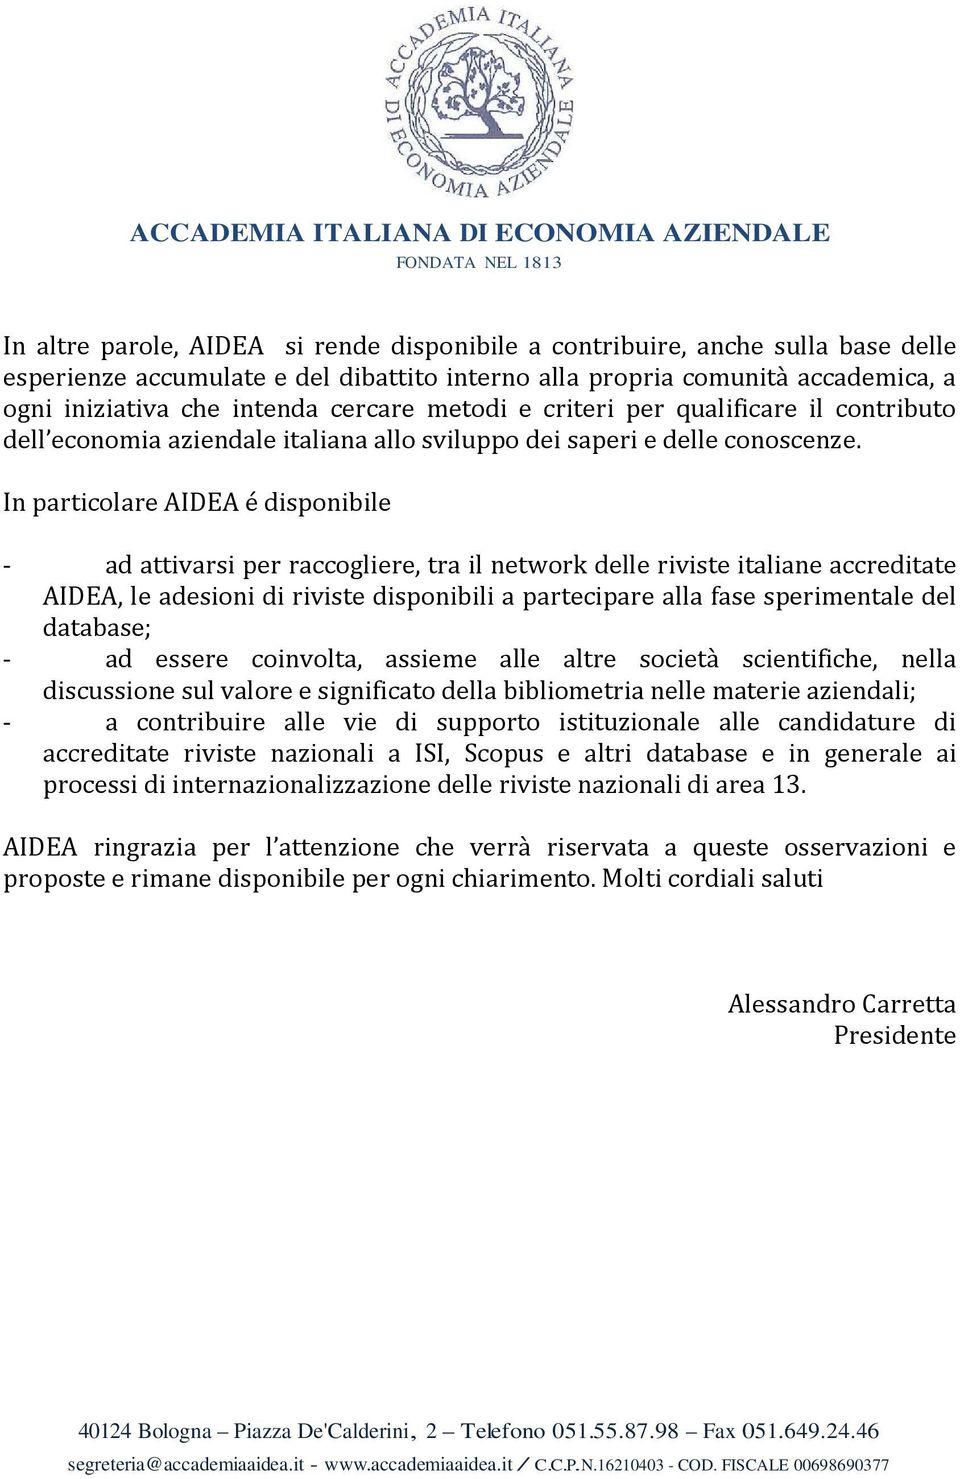 In particolare AIDEA é disponibile - ad attivarsi per raccogliere, tra il network delle riviste italiane accreditate AIDEA, le adesioni di riviste disponibili a partecipare alla fase sperimentale del